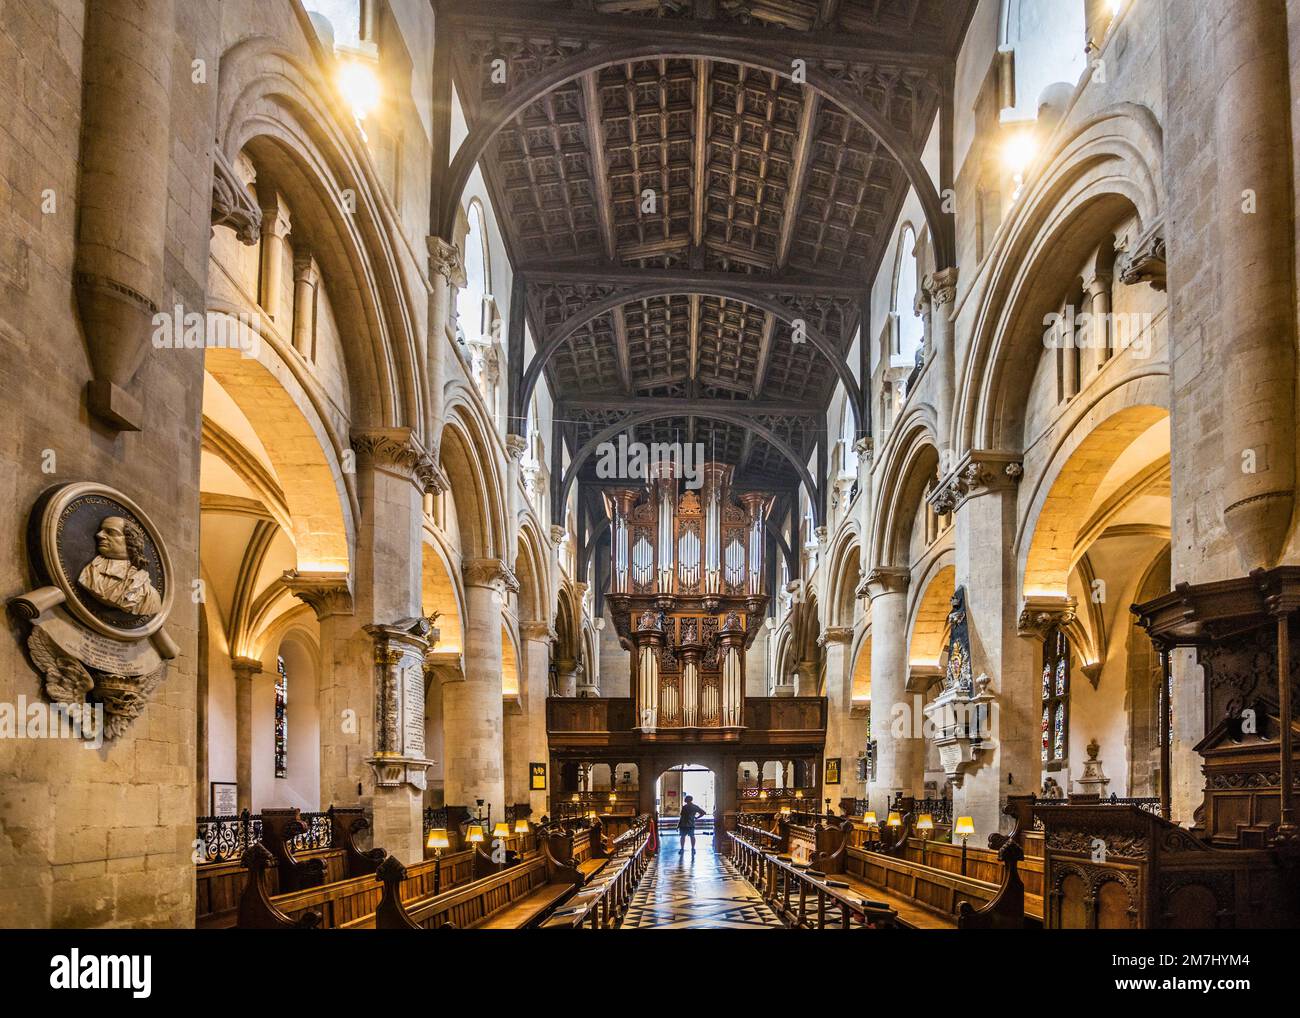 Coro della Cattedrale di Christ Church, Oxford guardando verso l'organo e l'entrata, Oxfordshire, Inghilterra sudorientale Foto Stock